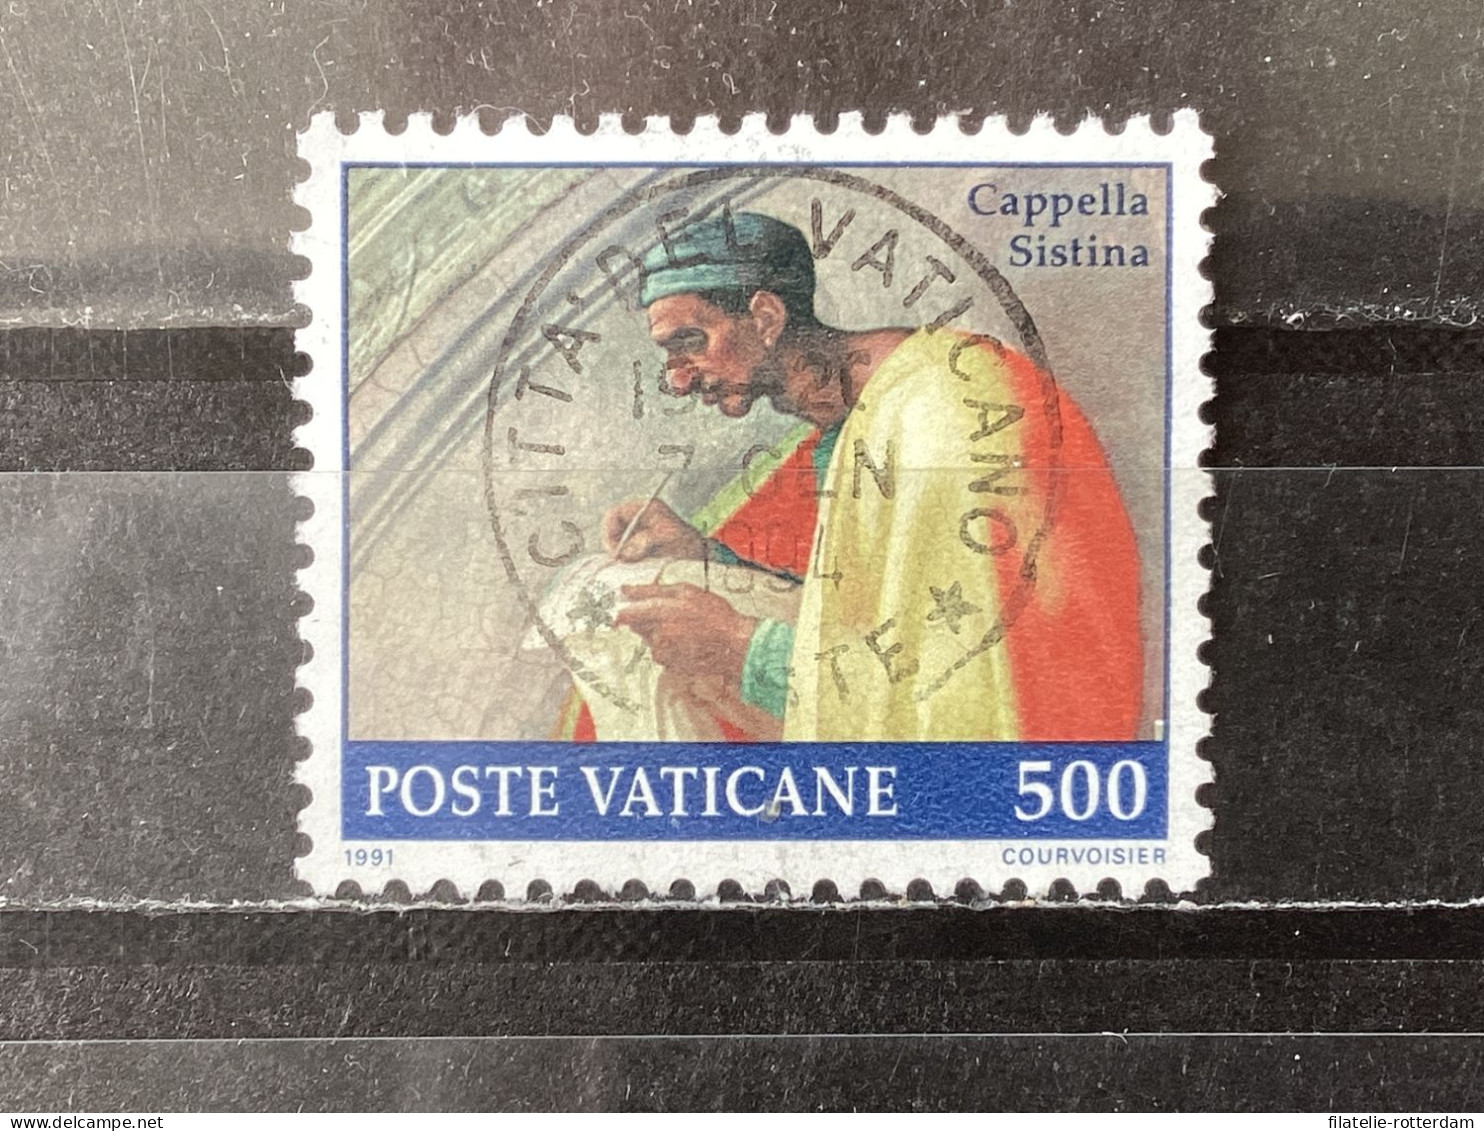 Vatican City / Vaticaanstad - Sixtin Chapel (500) 1991 - Used Stamps